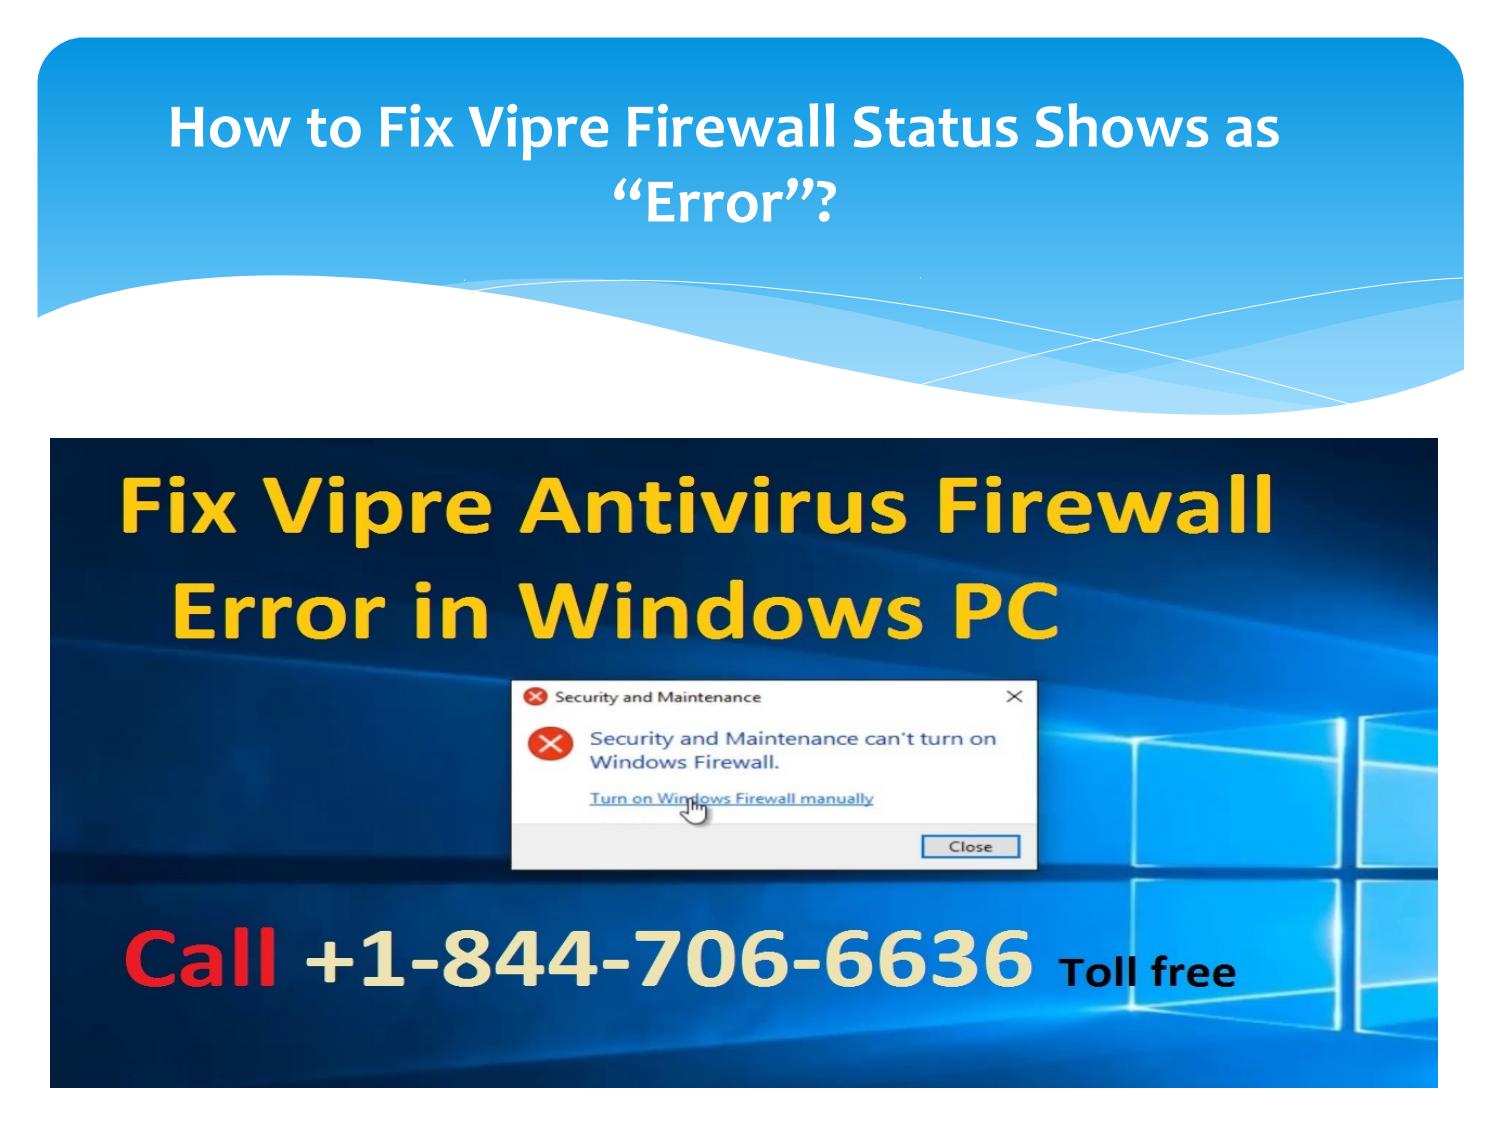 error de firewall de vigilancia de internet de vipre 2014